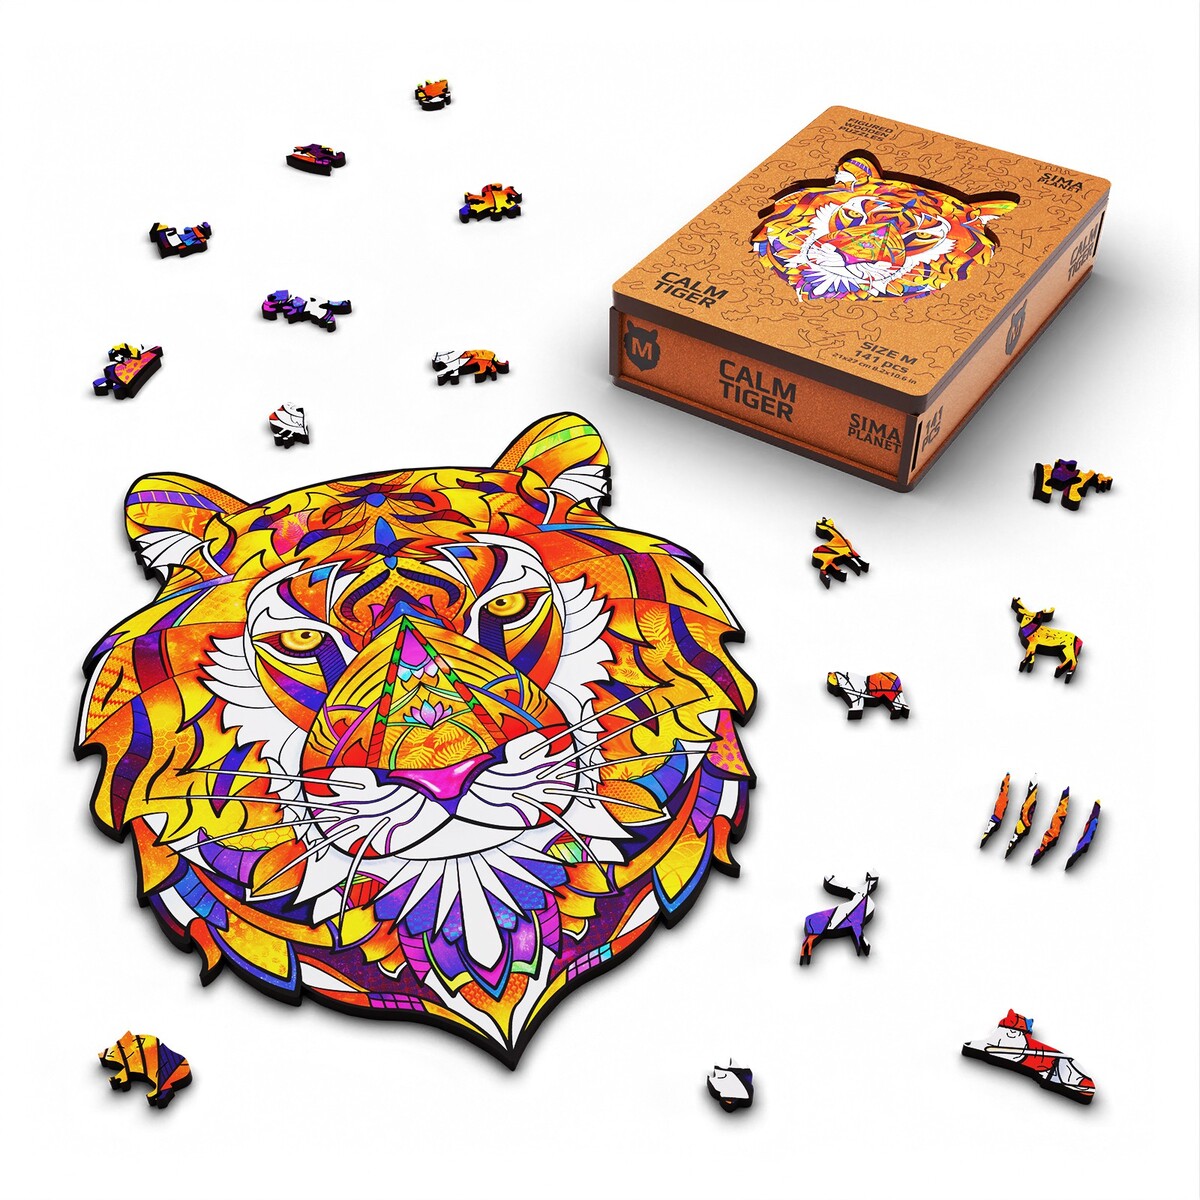 Пазл фигурный деревянный calm tiger, размер 21х27 см, 141 деталь пазл астрель 360эл сладкие мечты 475х475м деталь 40х28мм 06449